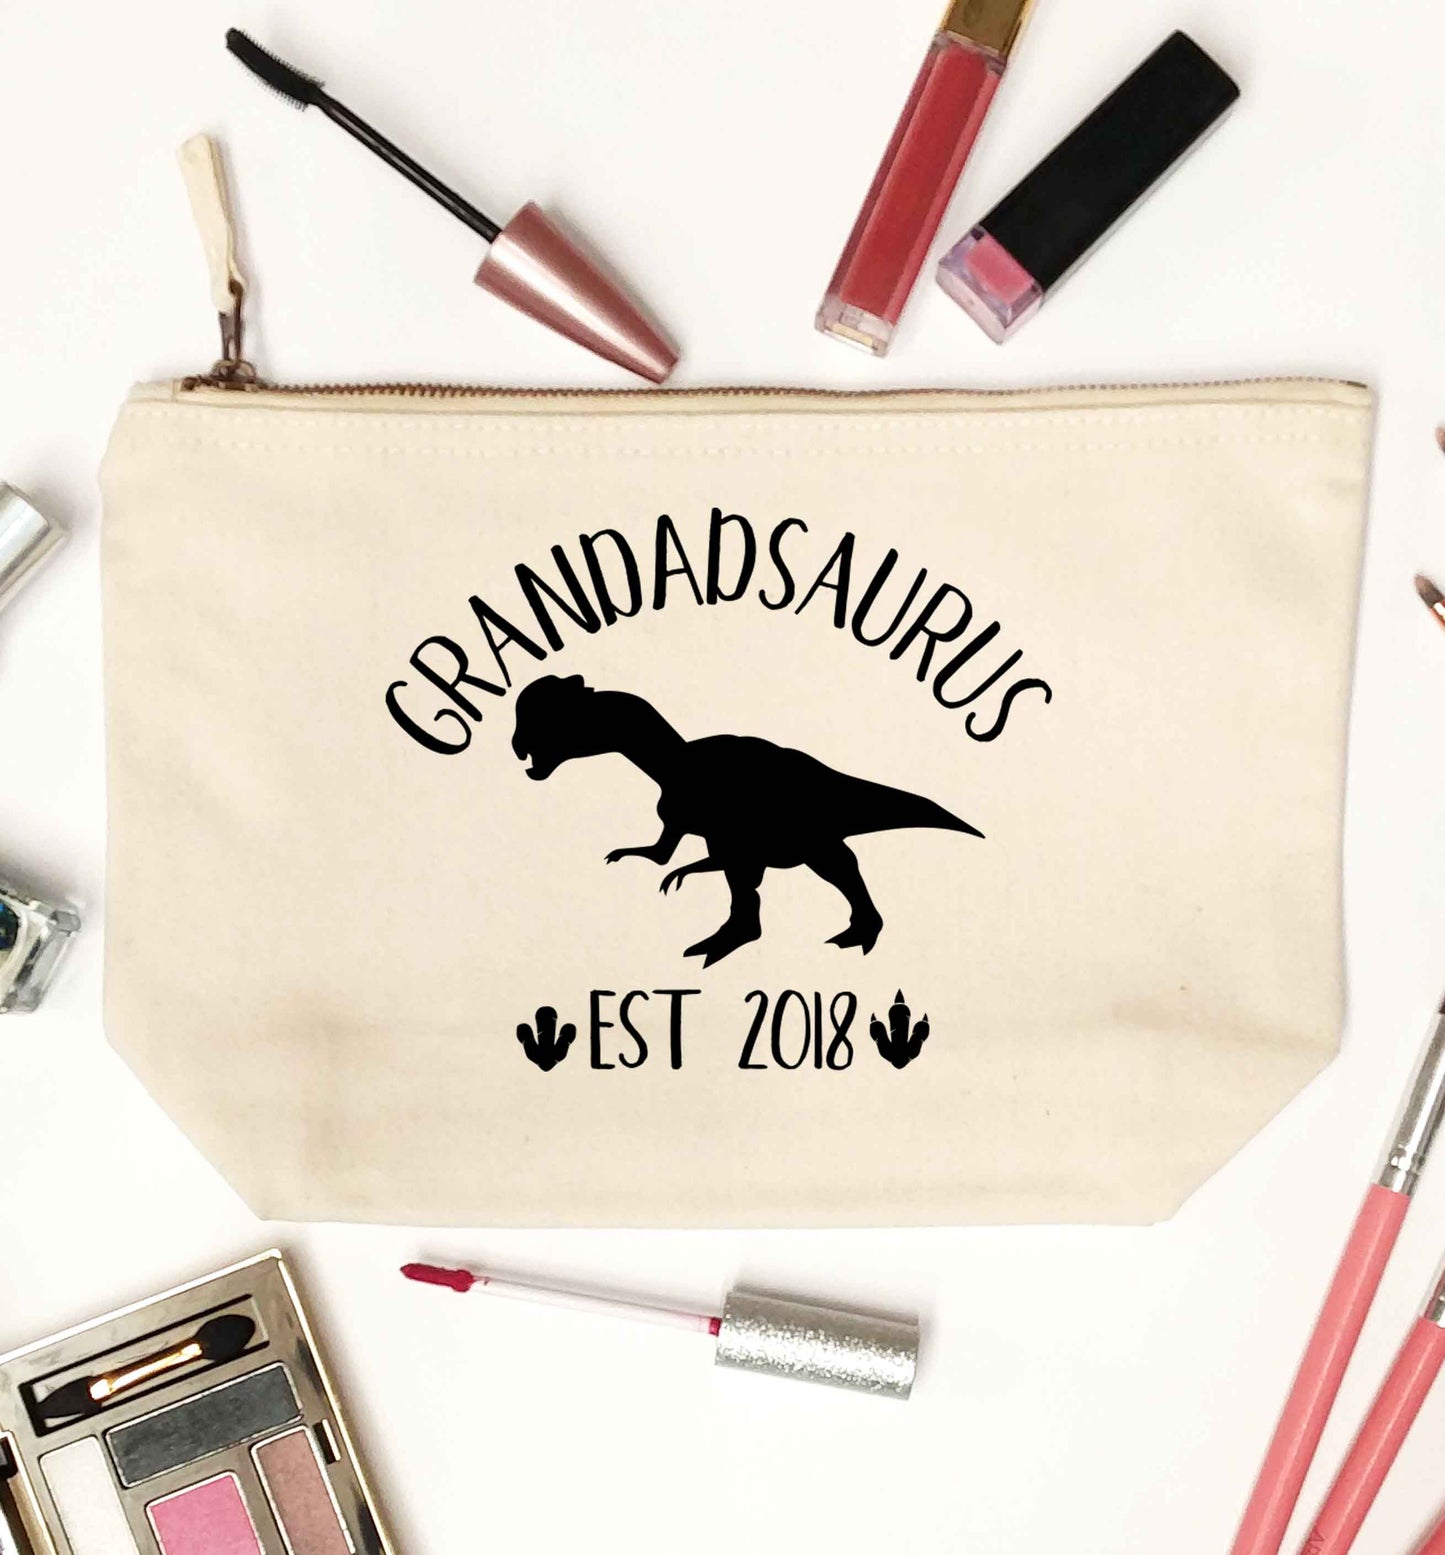 Personalised grandadsaurus since (custom date) natural makeup bag